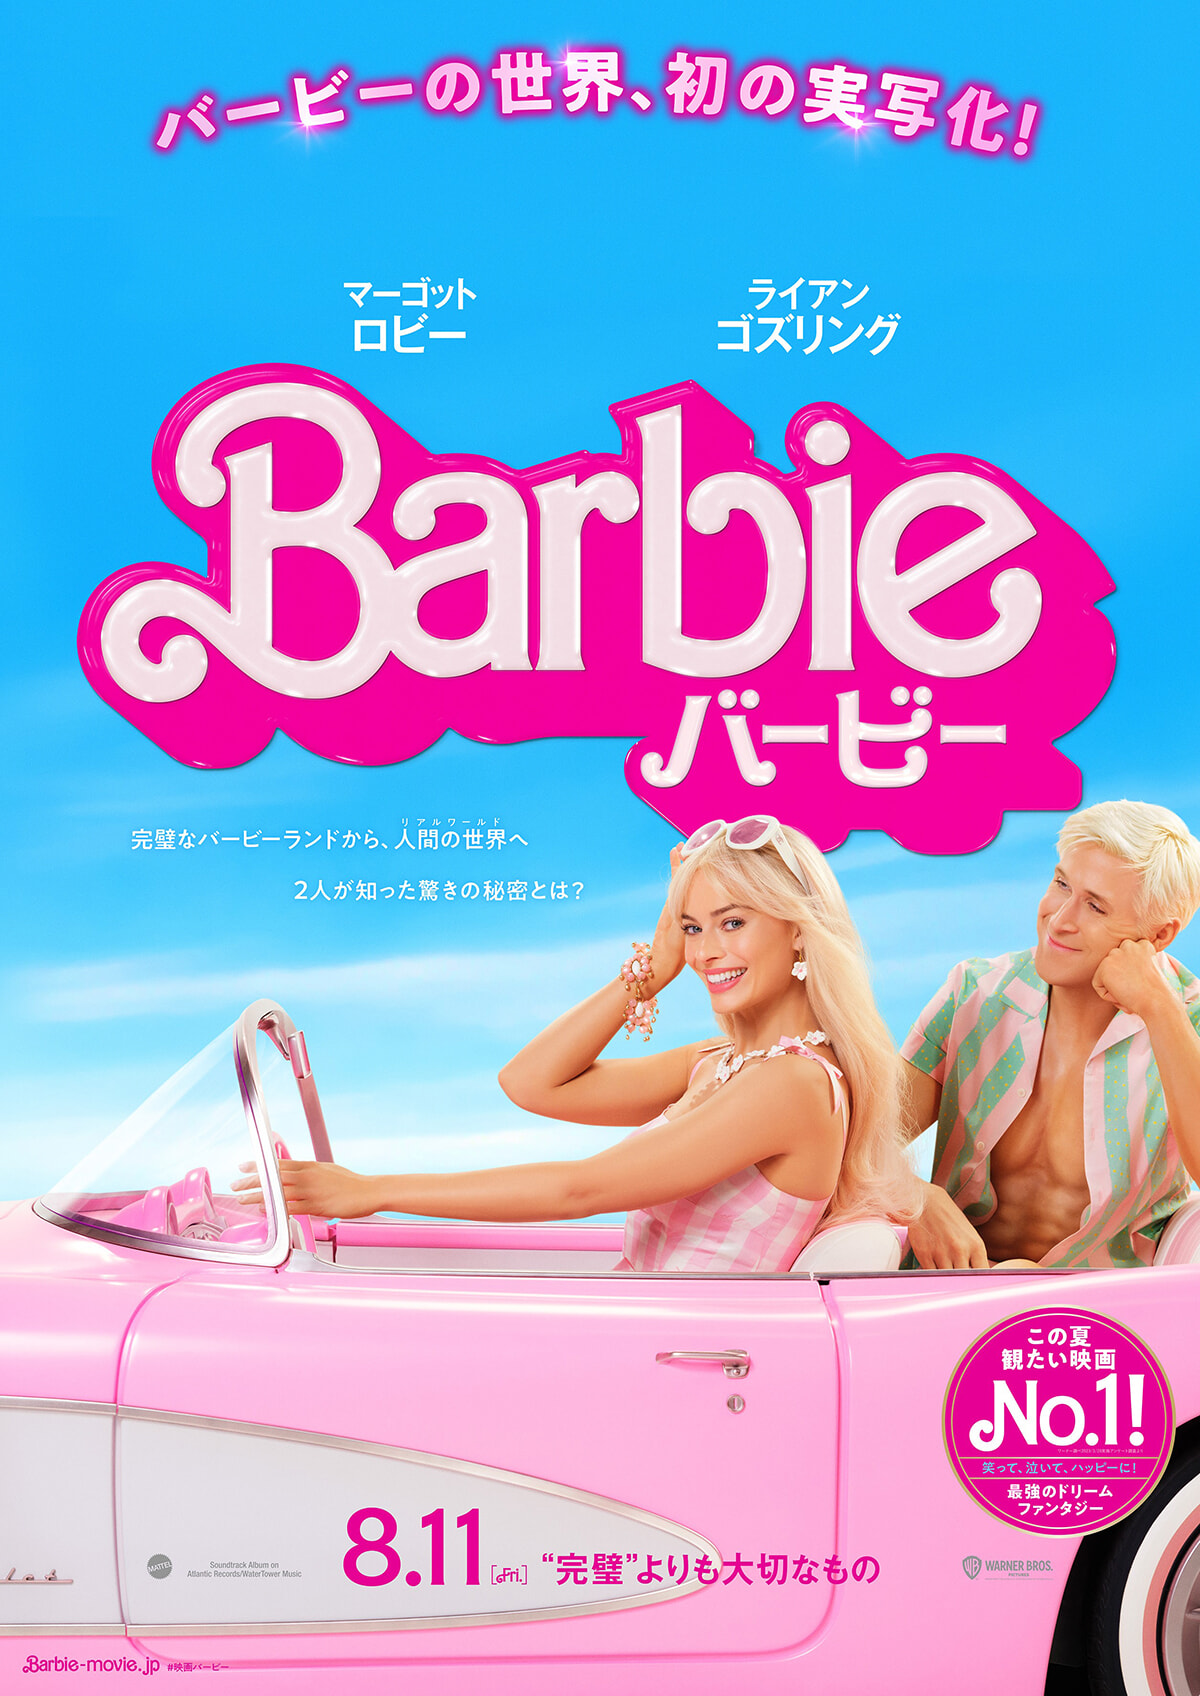 230822-barbie-01.jpg